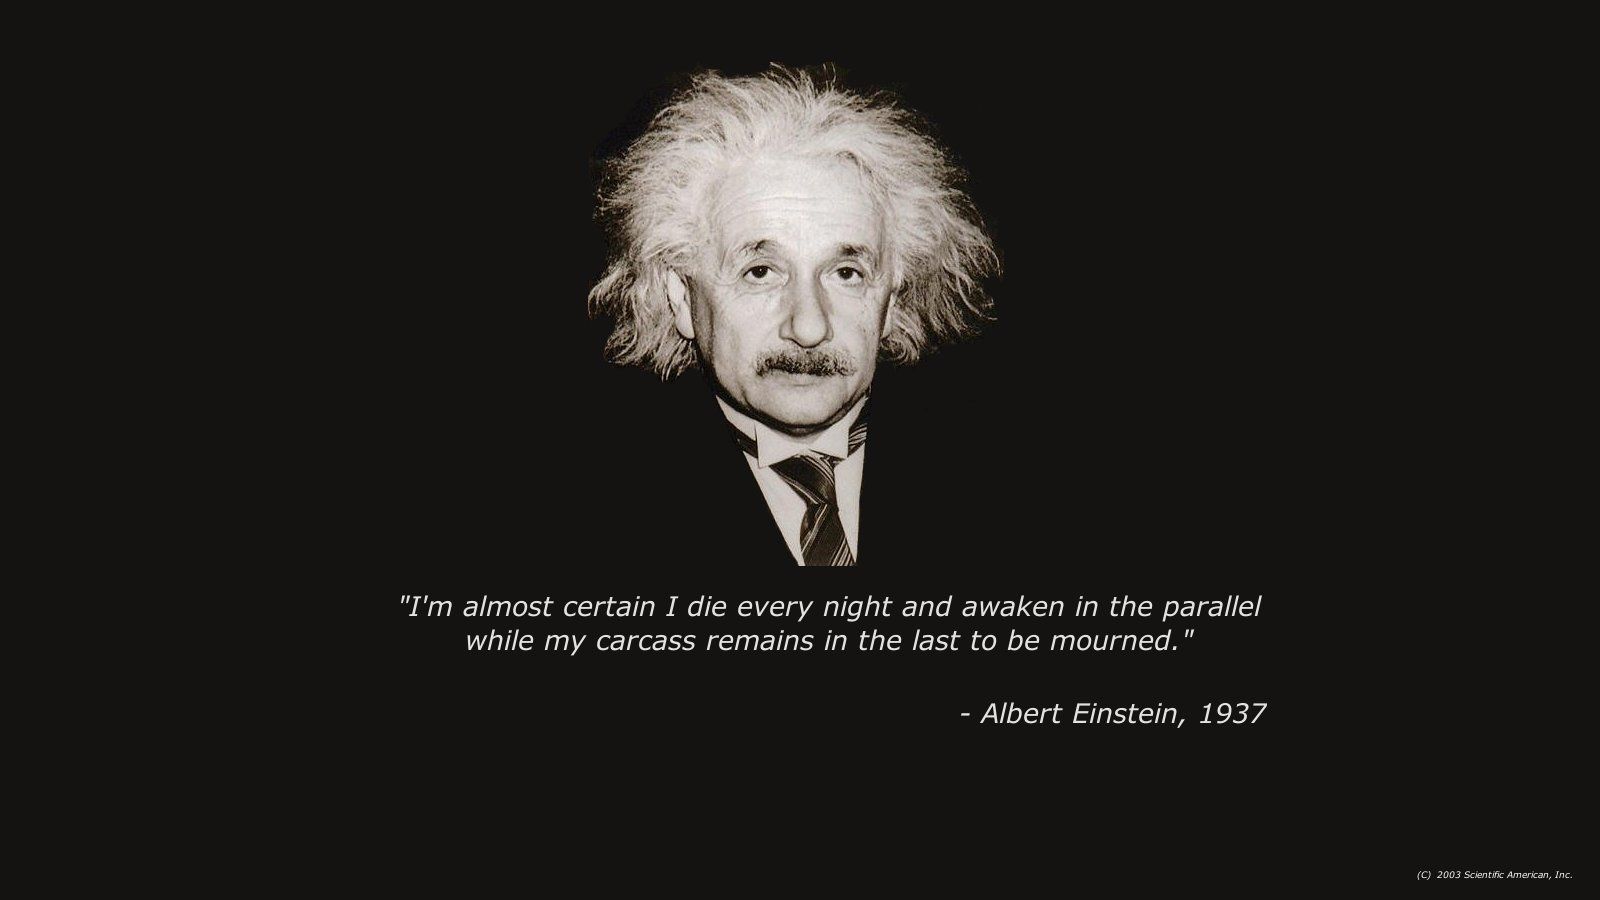  Albert Einstein Hintergrundbild 1600x900. Albert Einstein Wallpaper. Facebook cover photo inspirational, Einstein, Facebook cover quotes